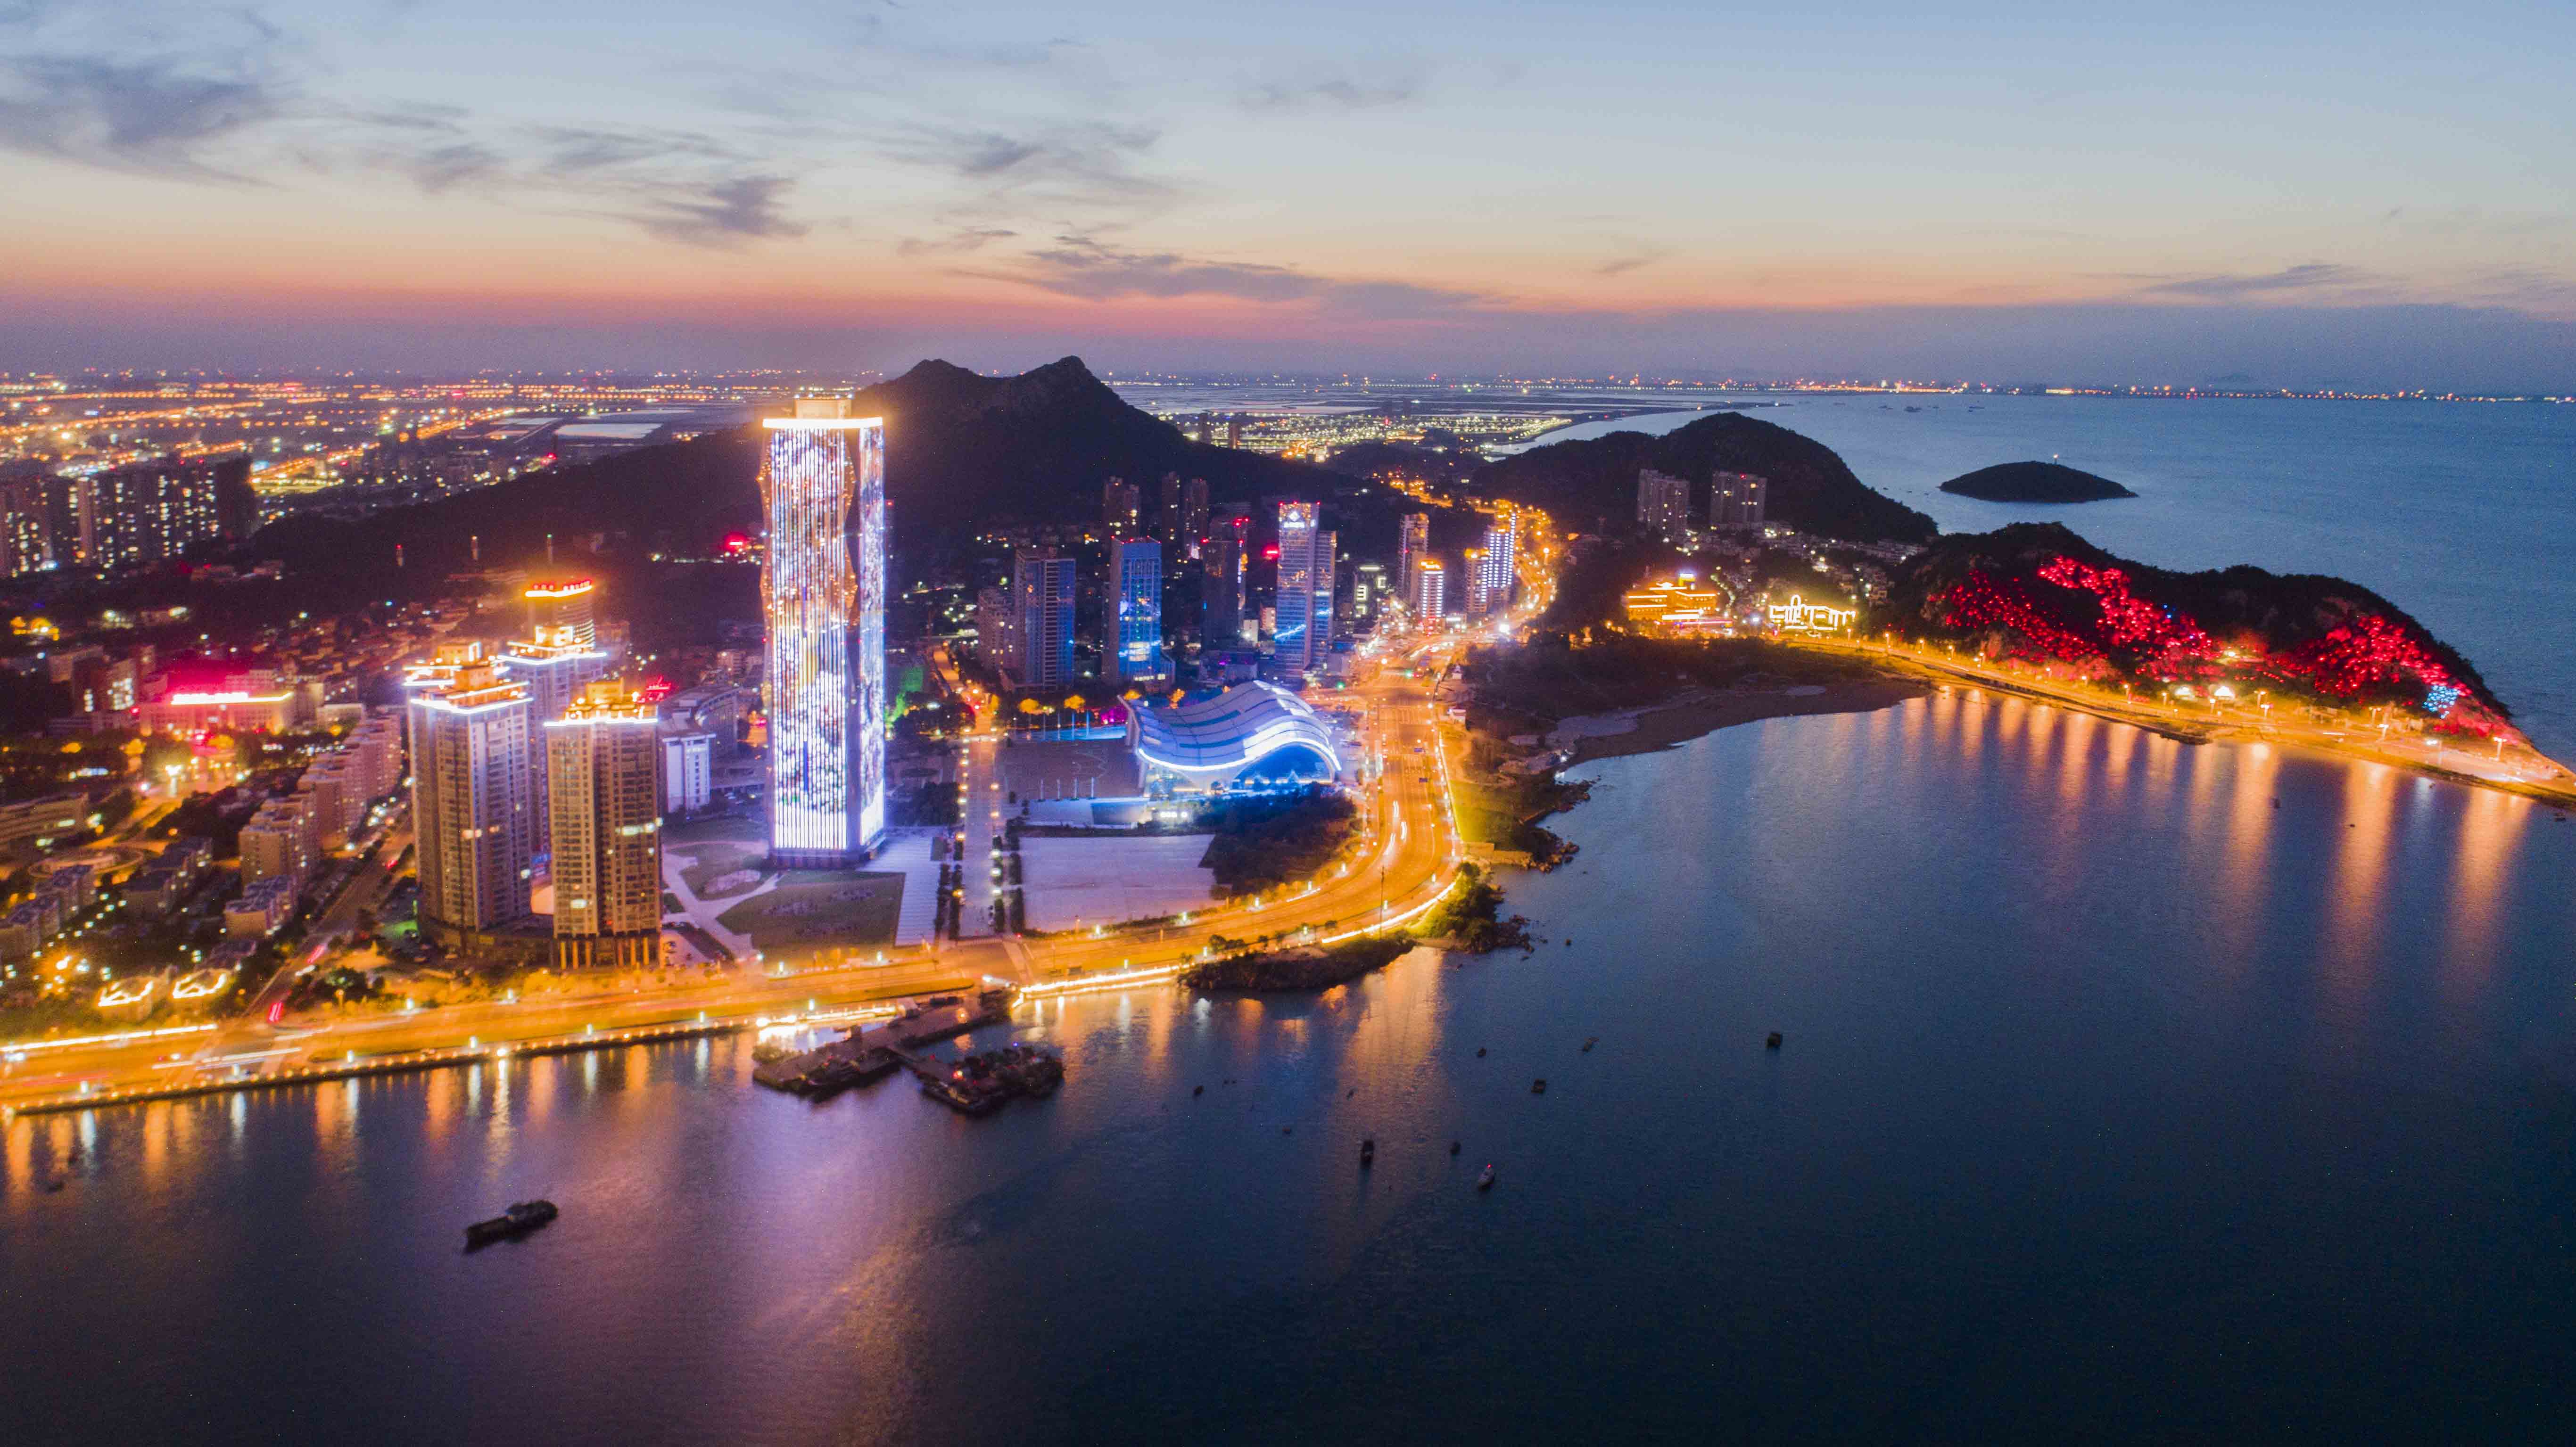 连云港连云区国展中心片区夜景照明设备项目工程2021神灯奖申报工程